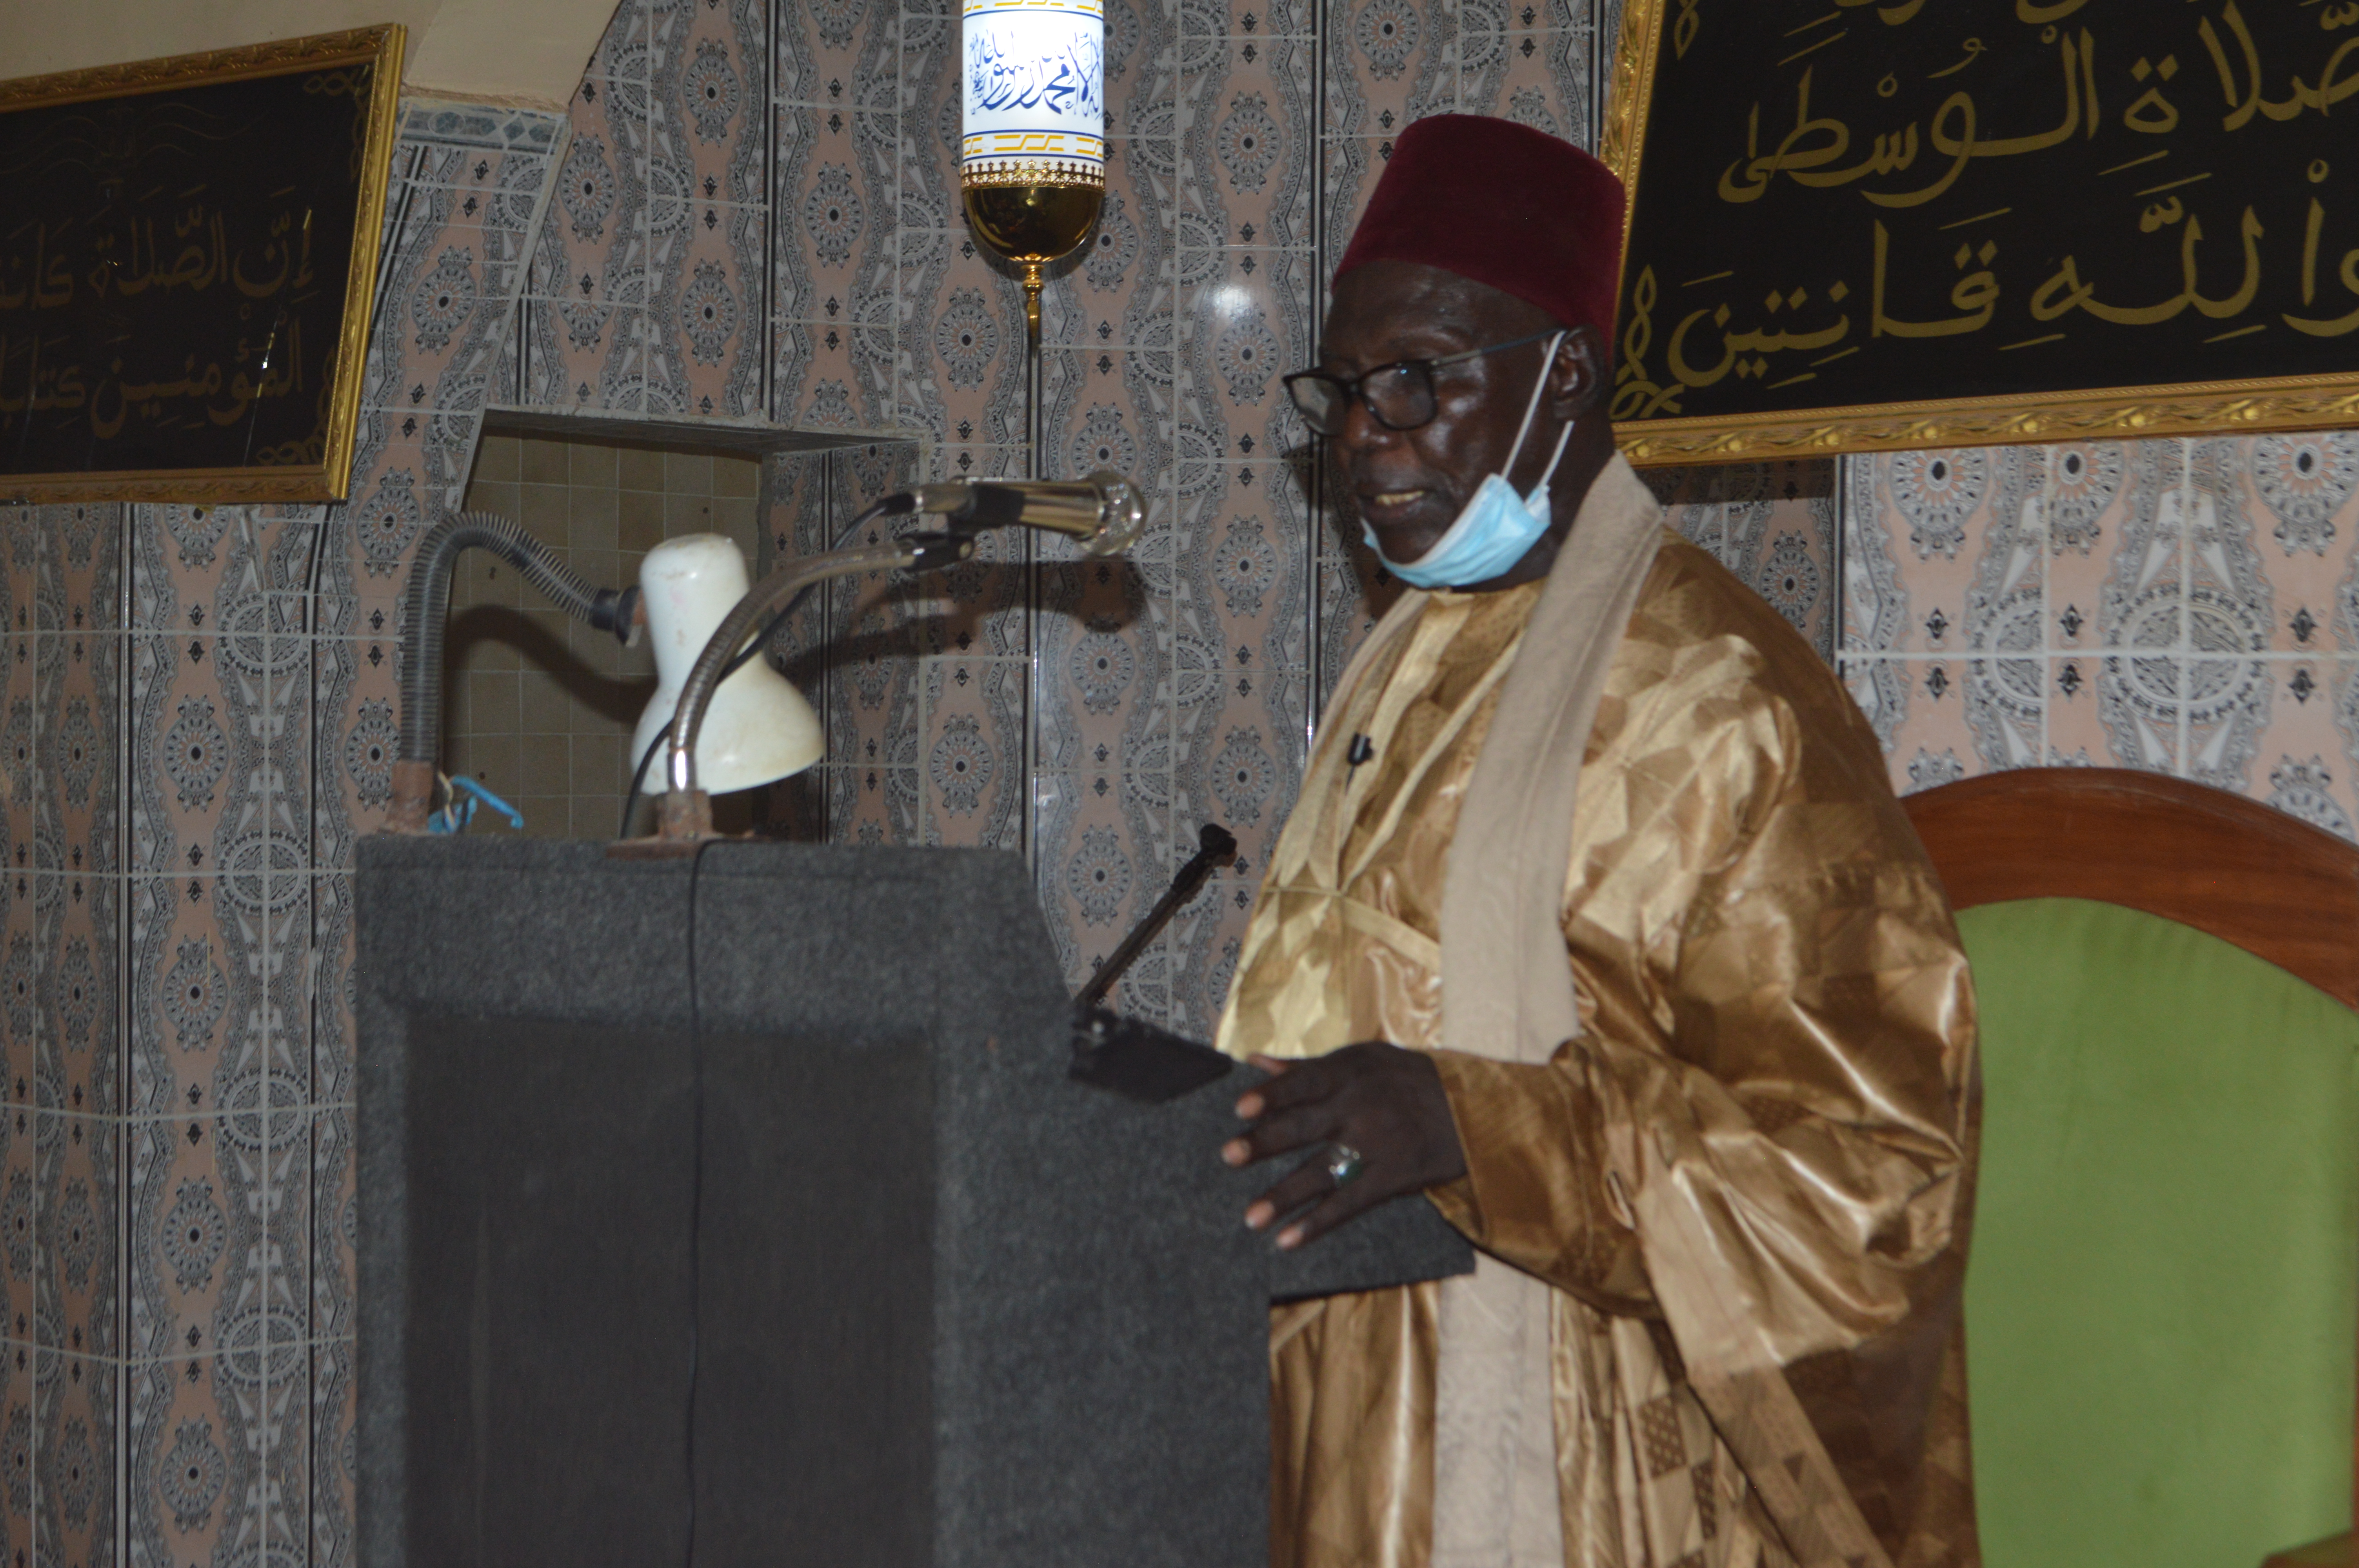 Emplois des jeunes au Sénégal, Une bonne organisation de la zakat peut résoudre le problème selon imam Ndiour